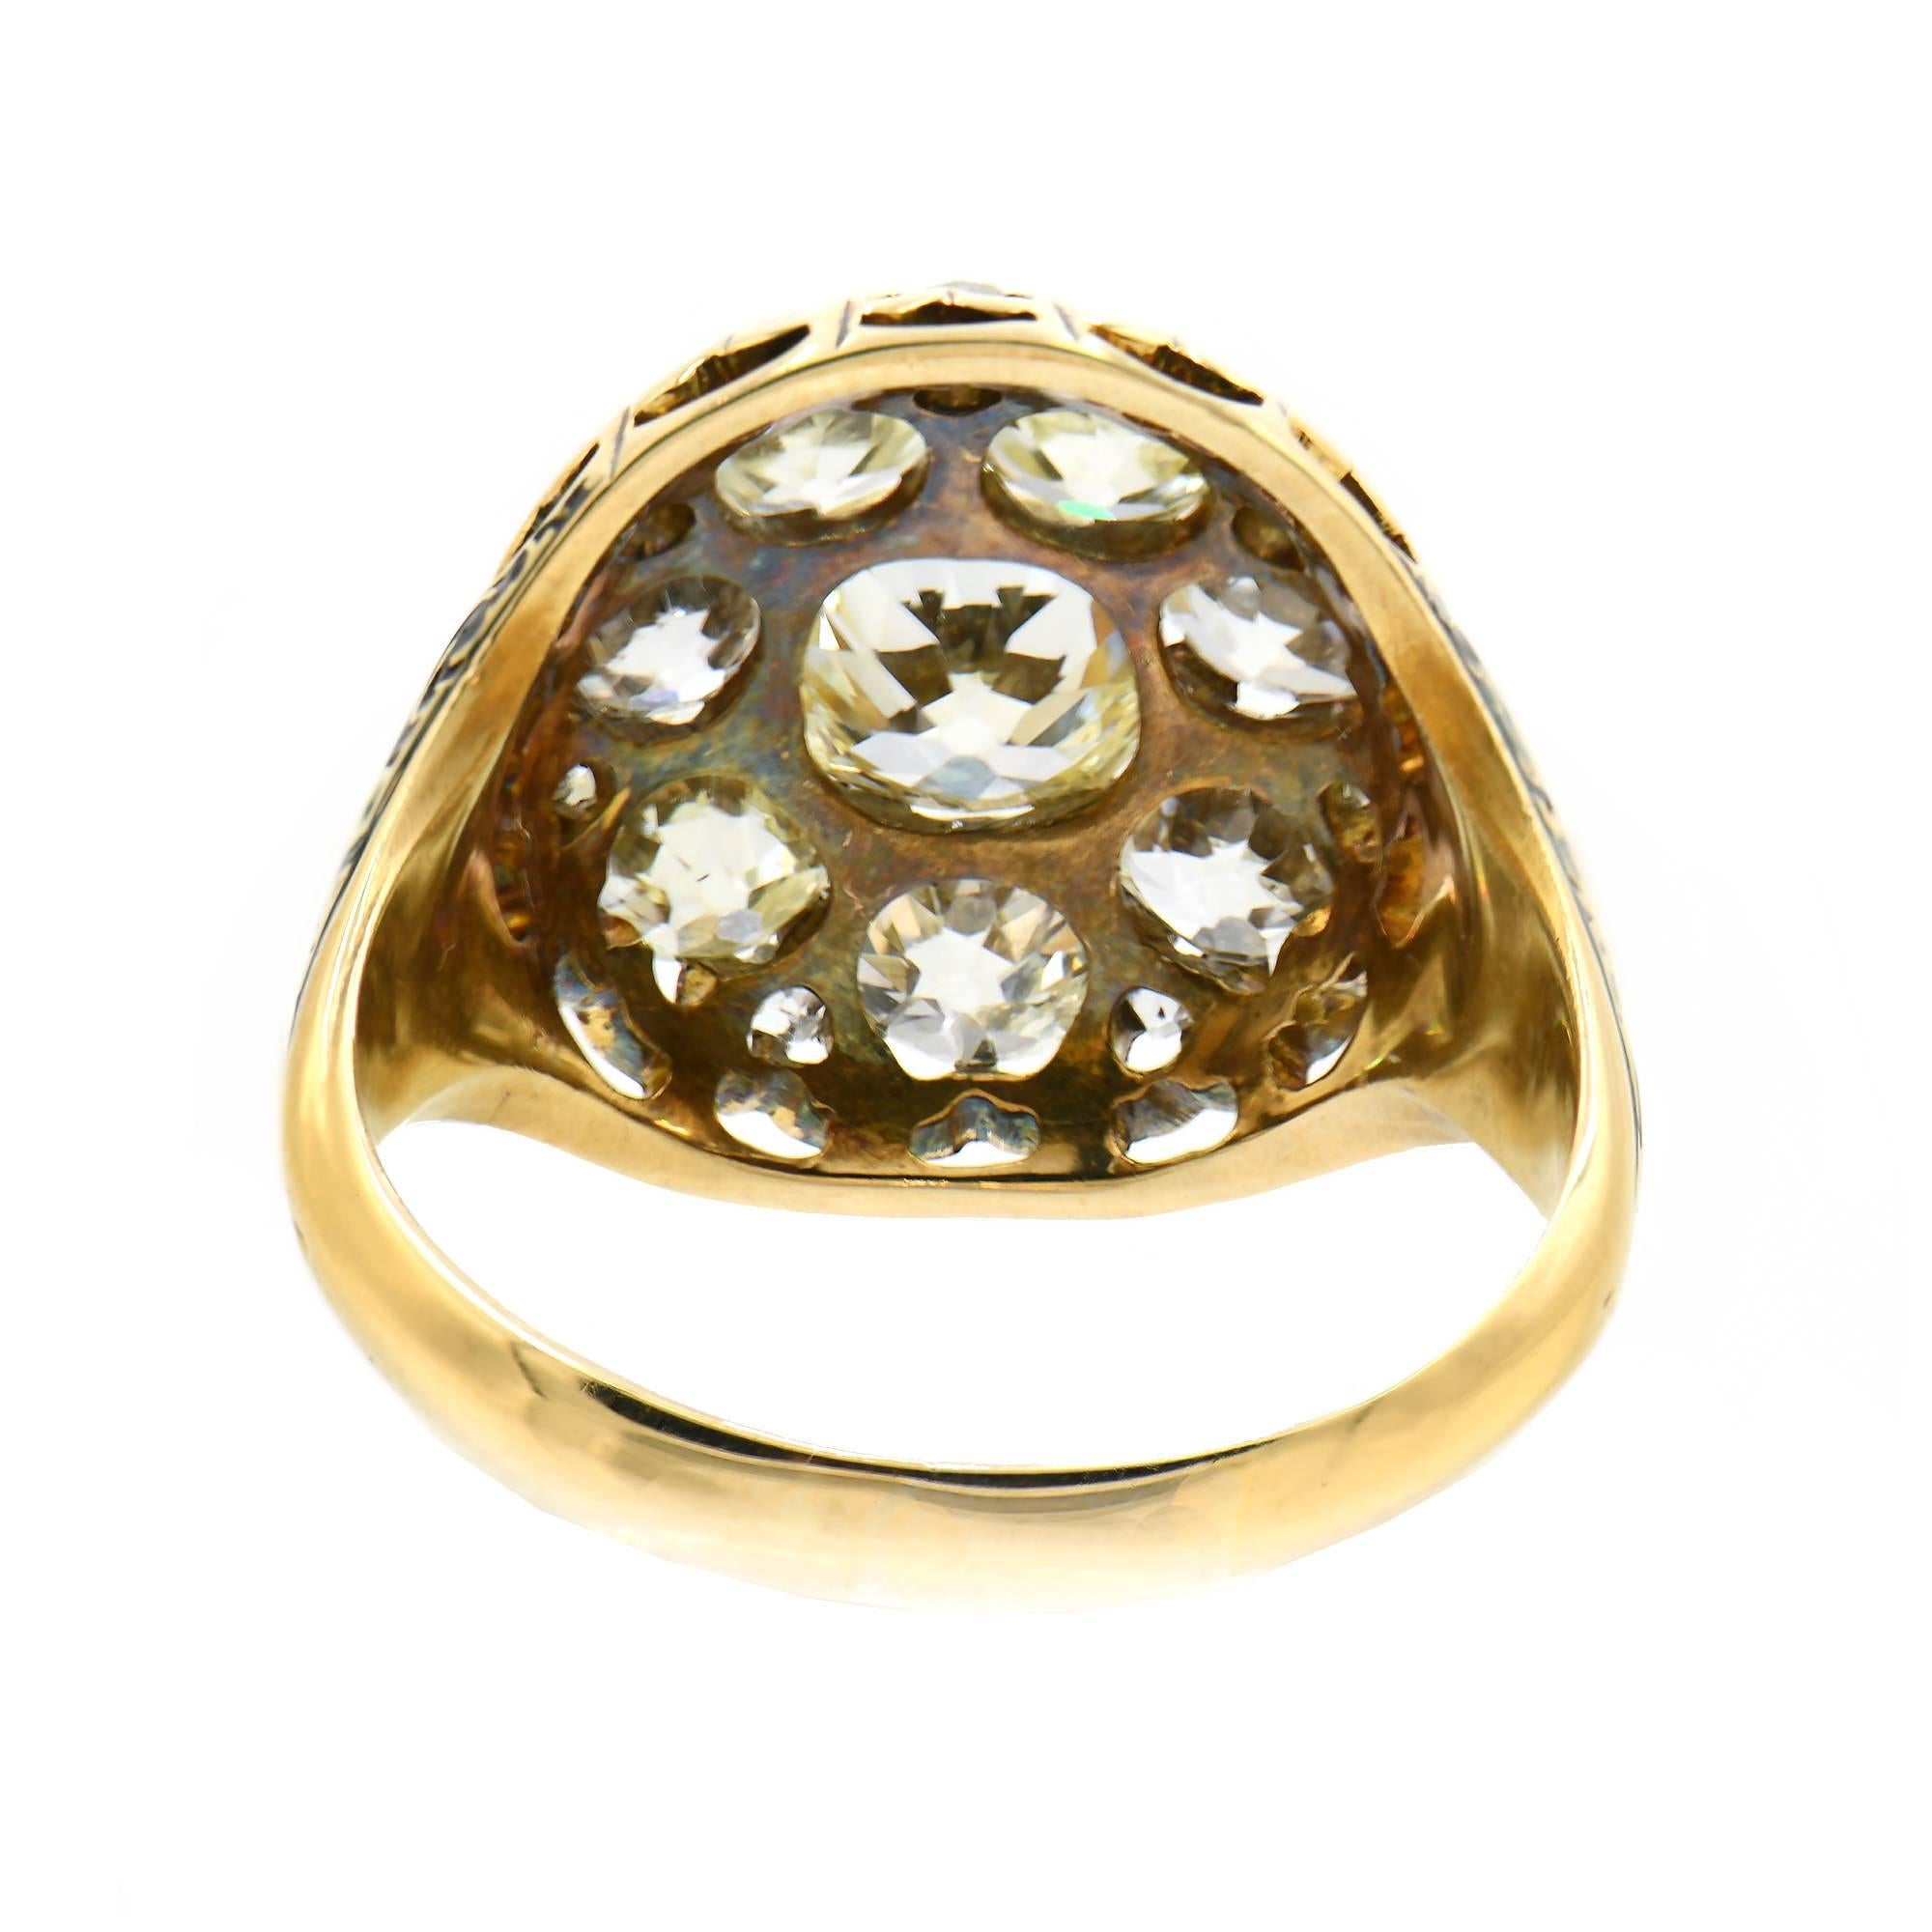 1800er viktorianischen Diamant-Cluster-Cocktail-Ring. 3,05cts Diamanten in 18k Gelbgold Einstellung mit einer Hand emaillierten Schaft gesetzt.  EGL zertifiziert 

1 Diamant aus alter Mine K-L SI ca. .91 Karat EGL Zertifikat # US 314571701D
7